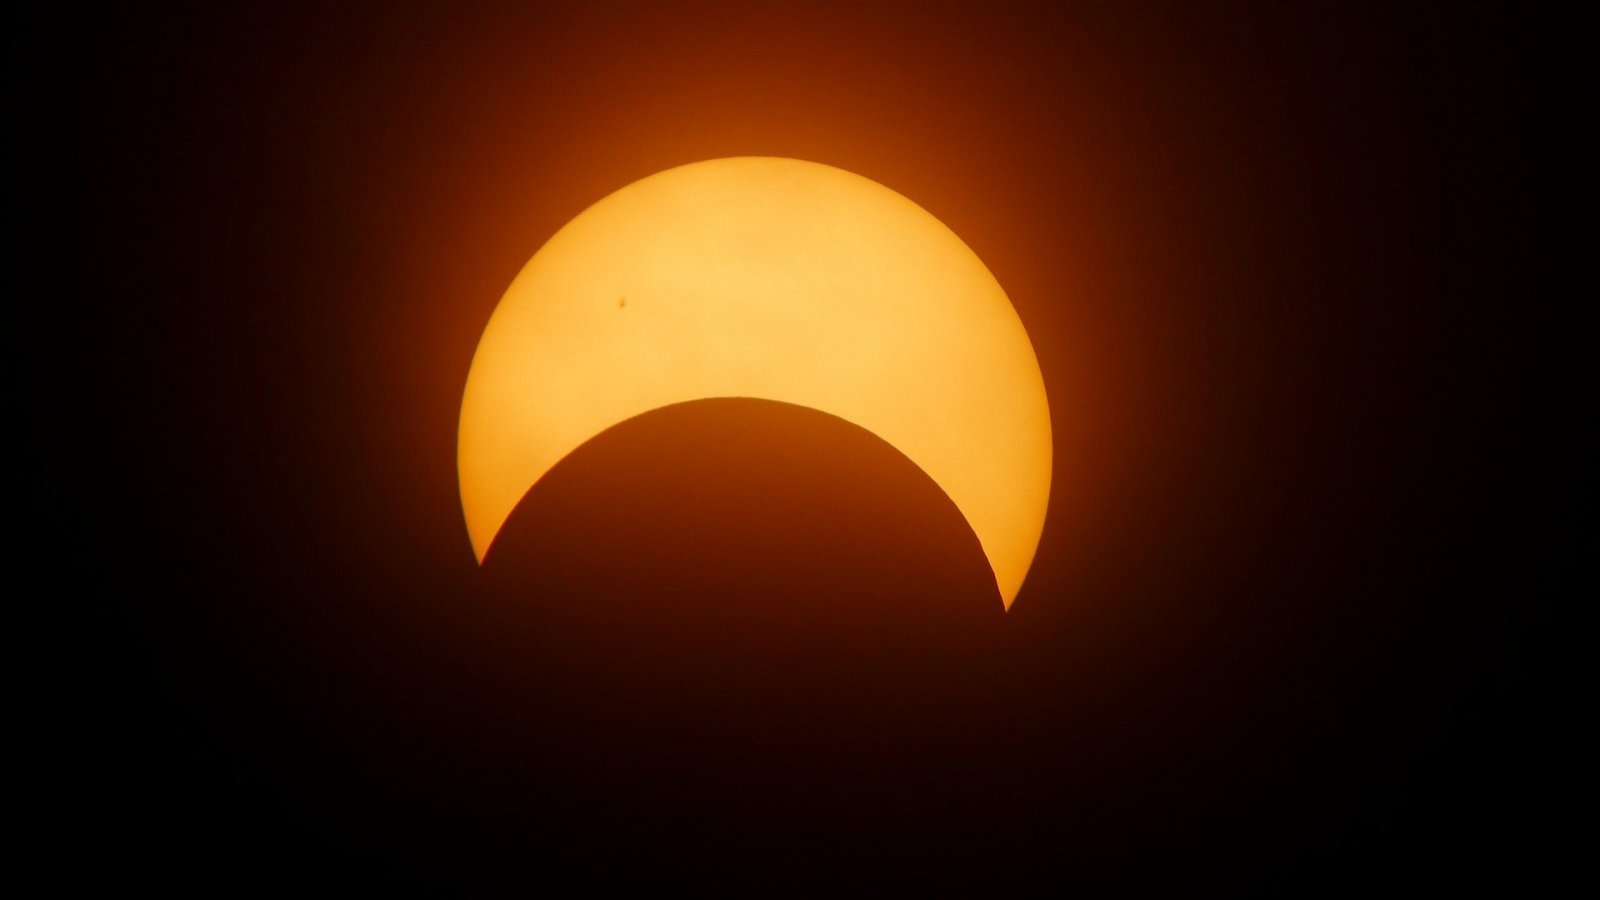 Eclipse solar 14 de octubre. ¿Se verá desde Chile?